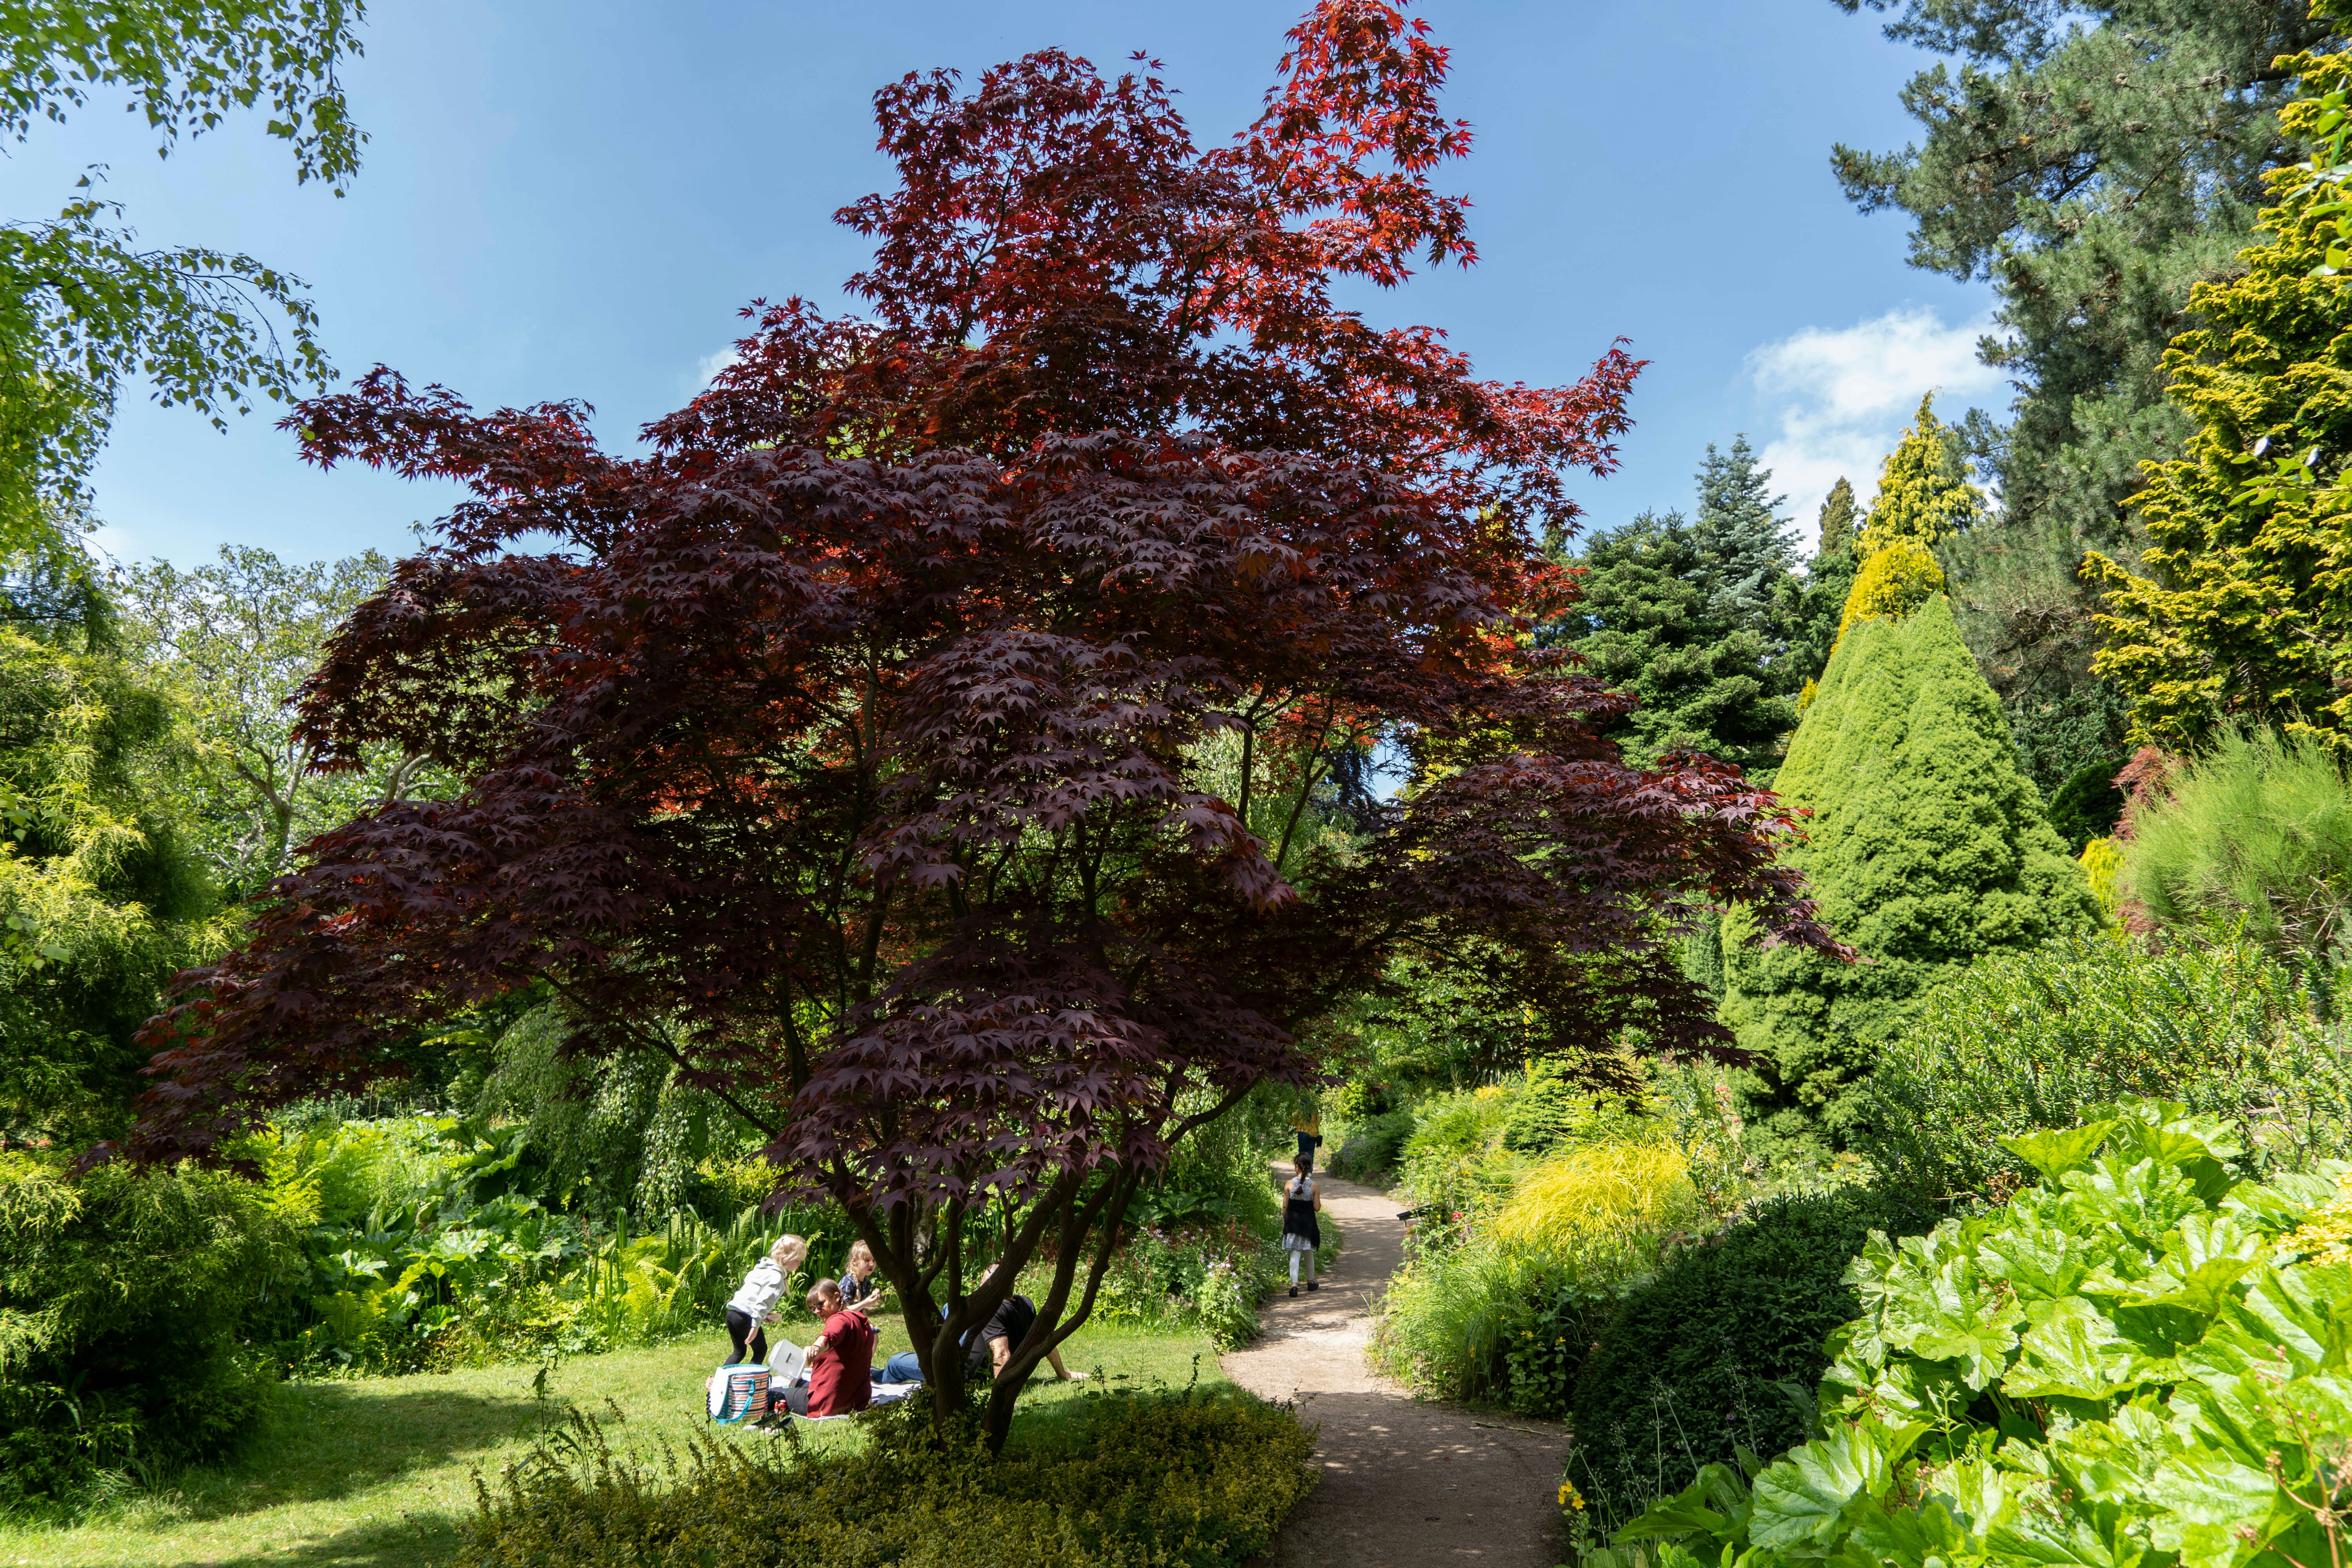 Families enjoy the sunshine at Fletcher Moss Park and Botanical Garden, Manchester, UK